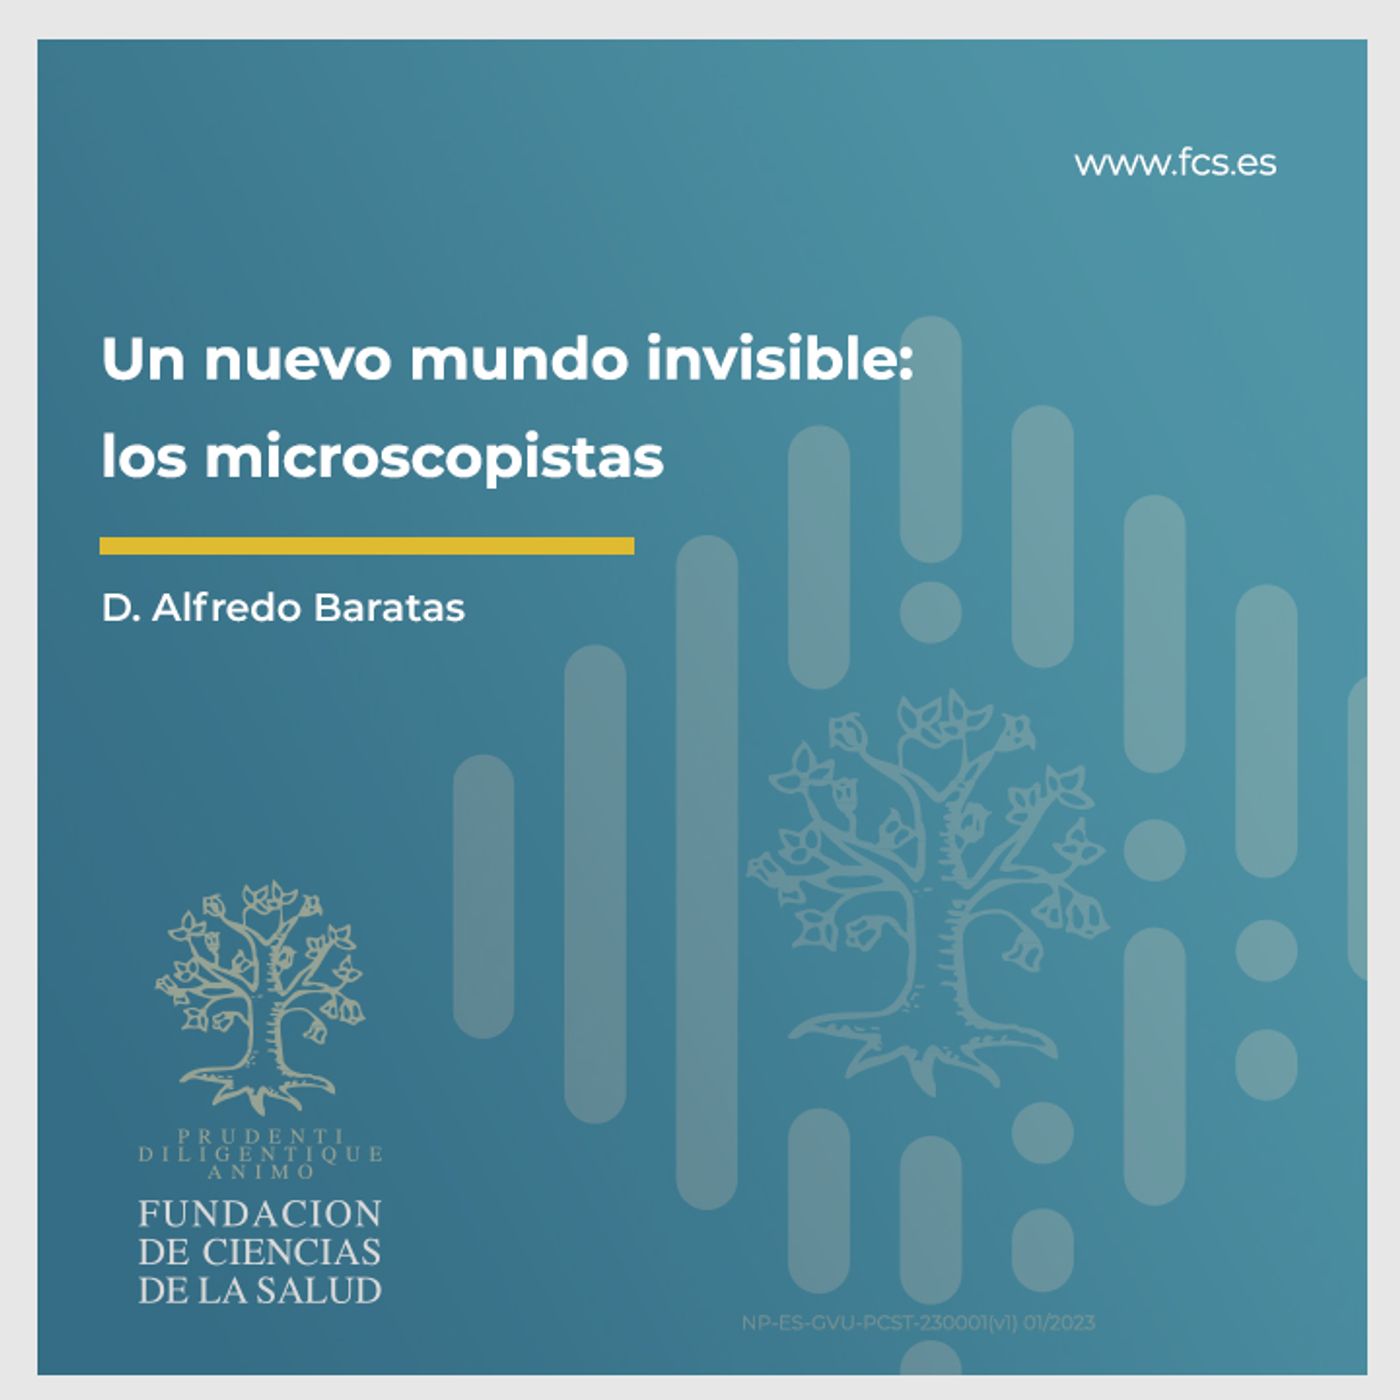 Sesión IV: "Un Nuevo Mundo Invisible. Los Microscopistas" con D. Alfredo Baratas